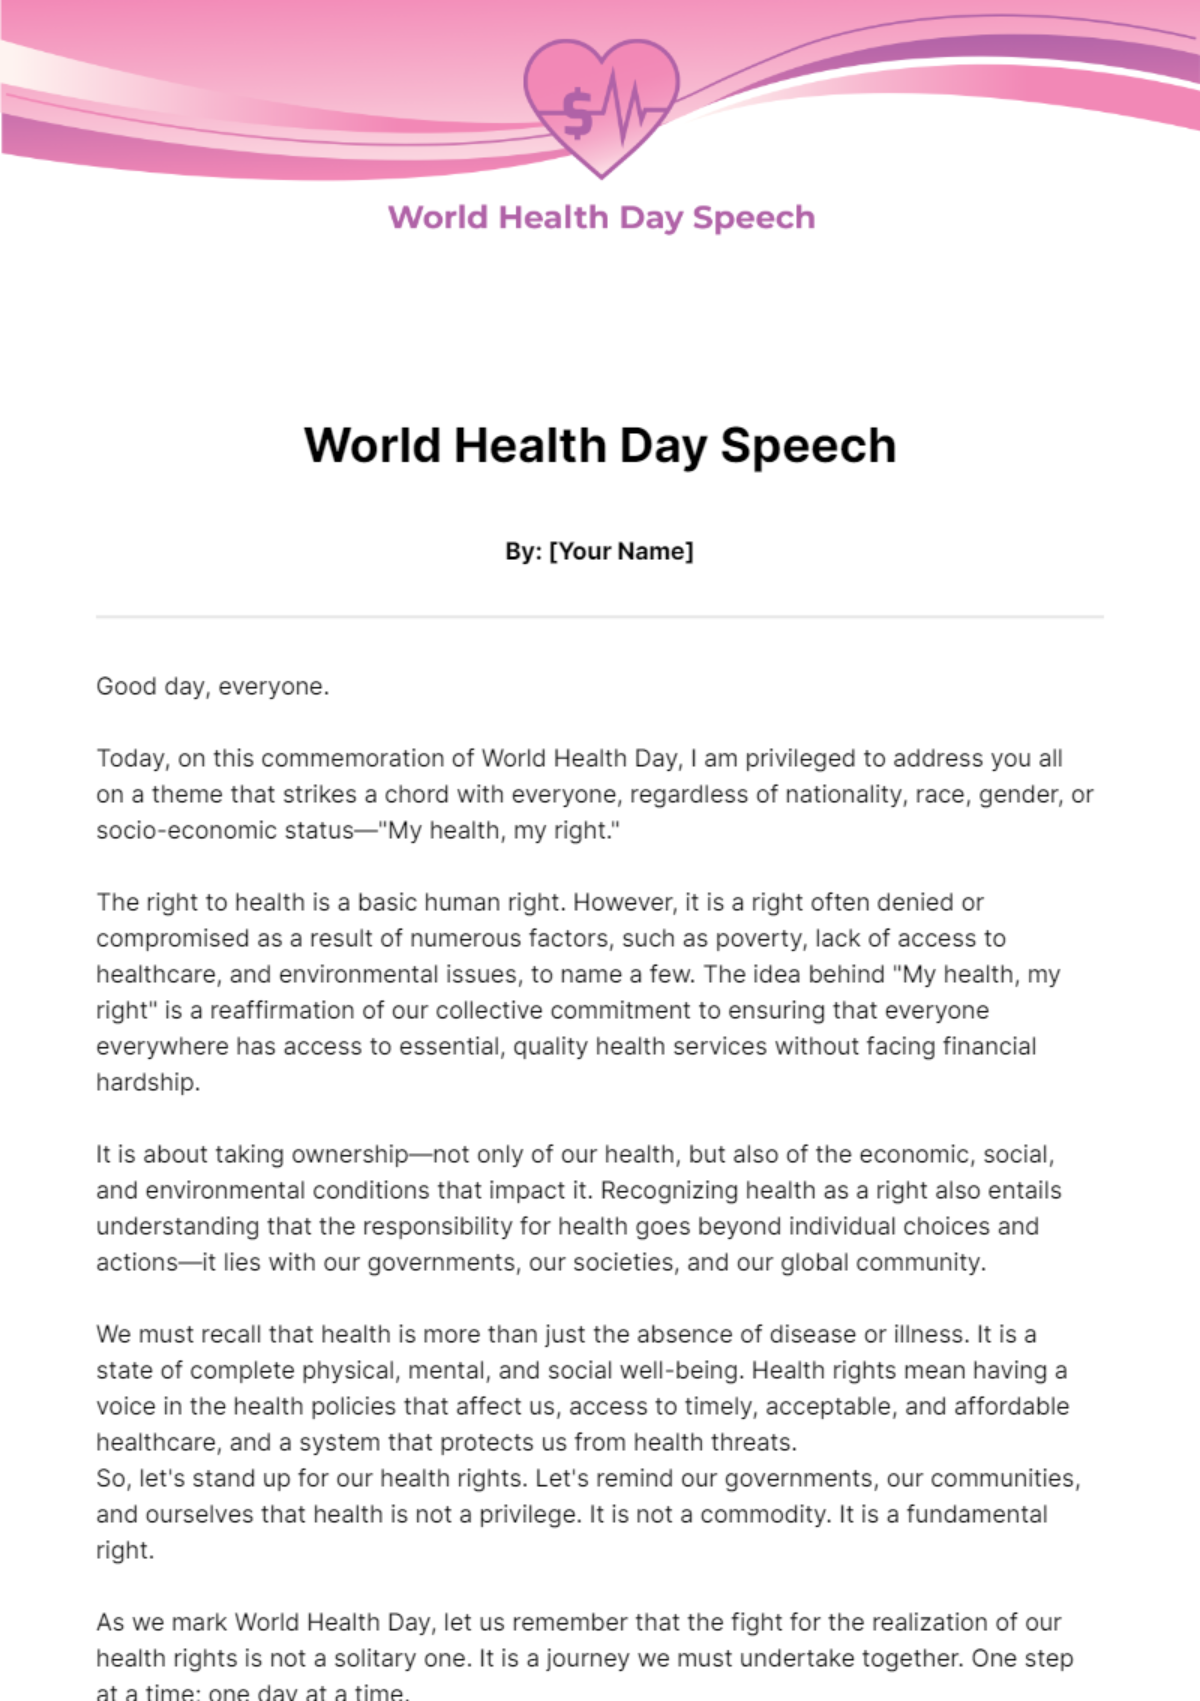 World Health Day Speech Template